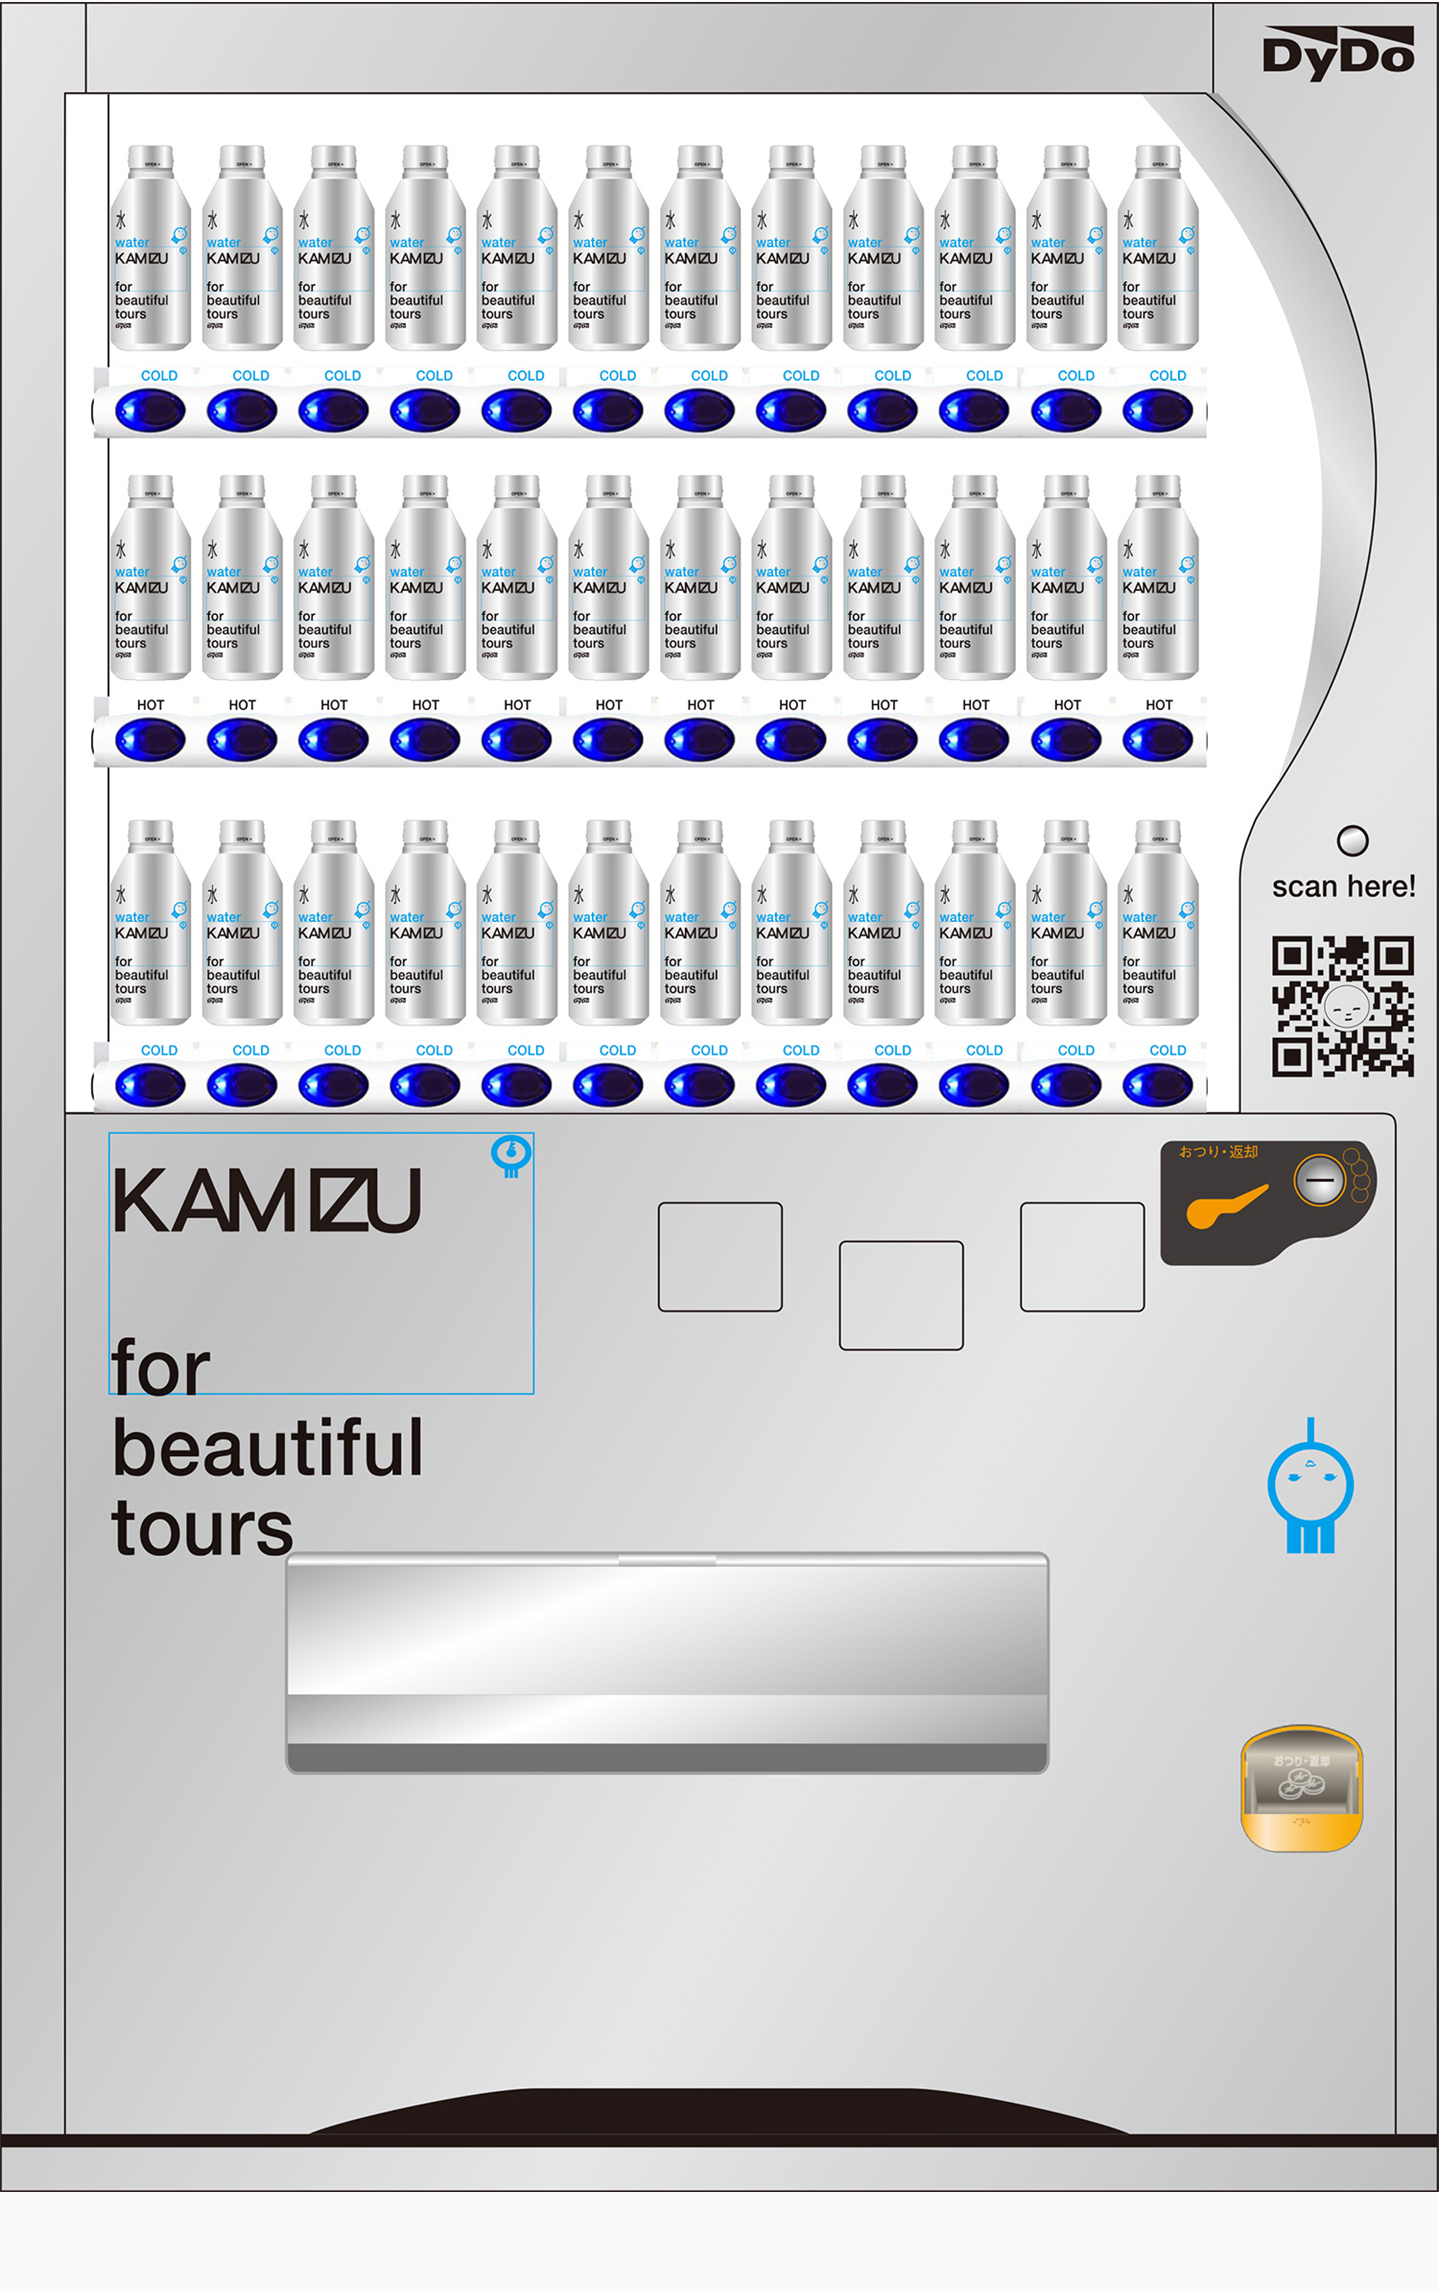 KAMIZU for beautiful tours